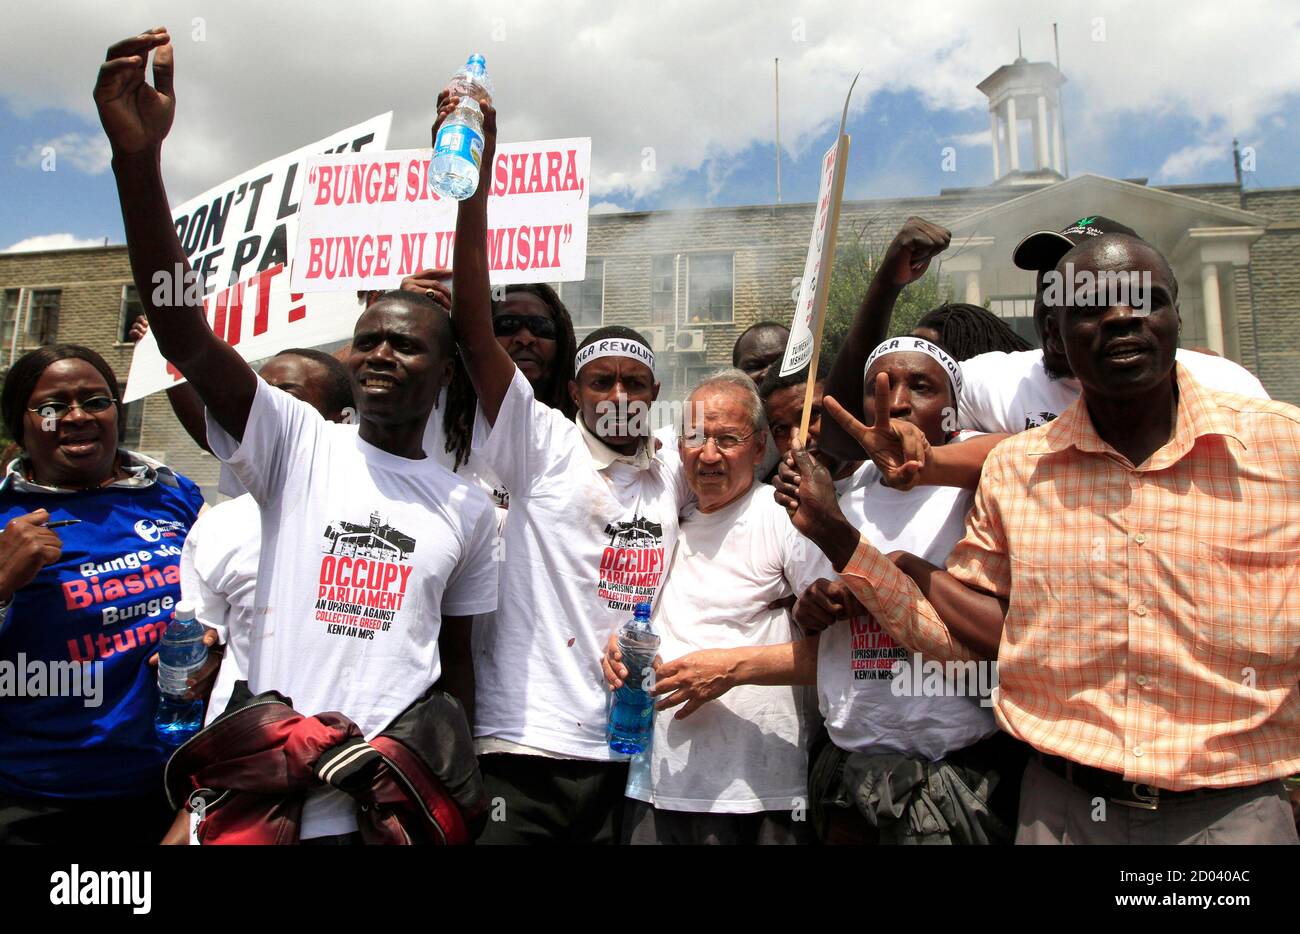 Los manifestantes participan en una manifestación contra las demandas salariales de los legisladores fuera de los edificios del parlamento en la capital Nairobi, 14 de mayo de 2013. La policía keniana, con equipo antidisturbios, disparó gases lacrimógenos y cañones de agua el martes para dispersar a unos 200 manifestantes que se reunieron fuera del parlamento para manifestarse contra las demandas salariales de los legisladores. REUTERS/Thomas Mukoya (KENIA - Tags: SOCIEDAD POLÍTICA DISTURBIOS CIVILES) Foto de stock